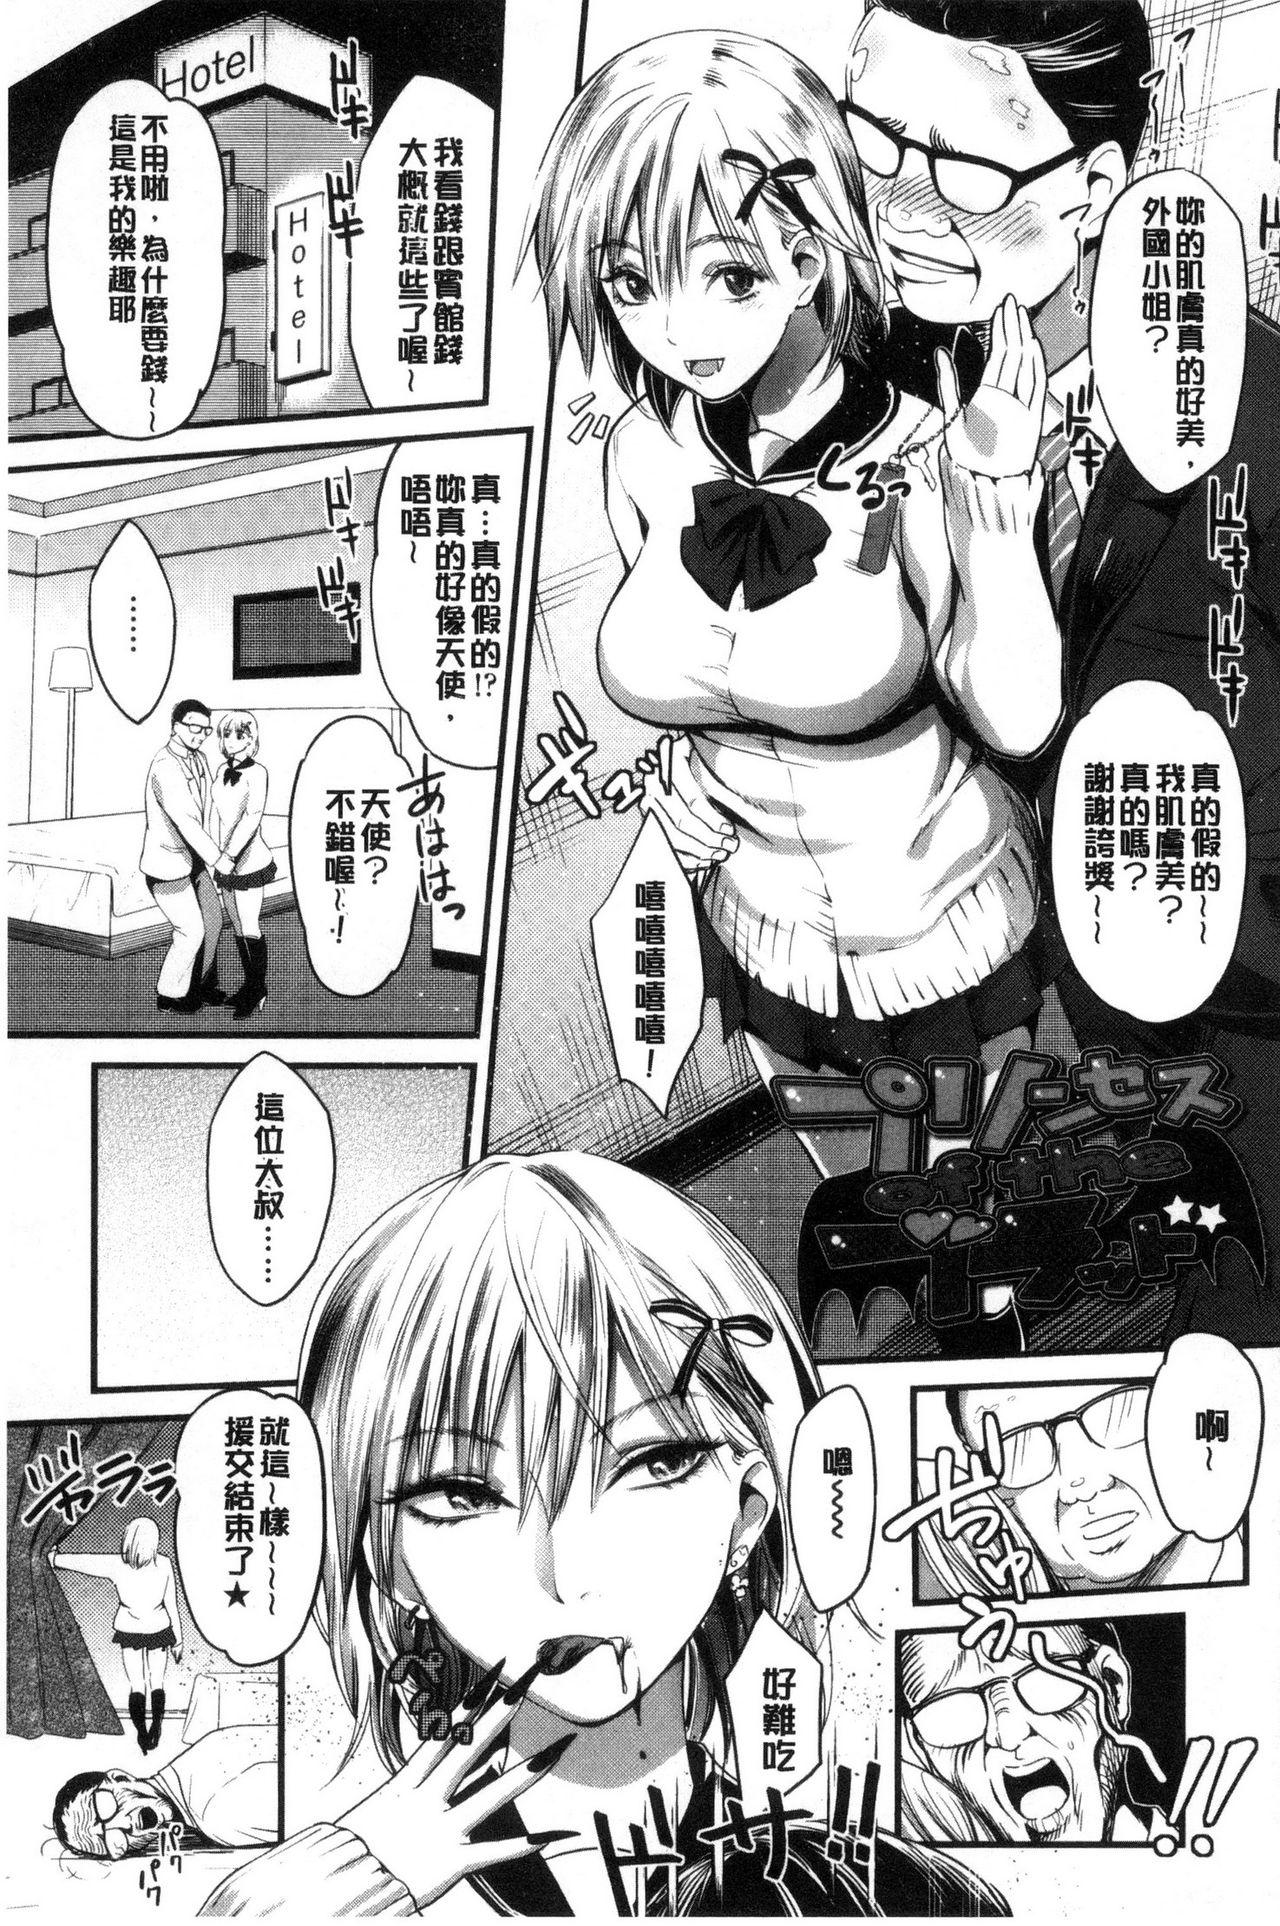 Seifuku no Mama Aishinasai! - Love in school uniform 64